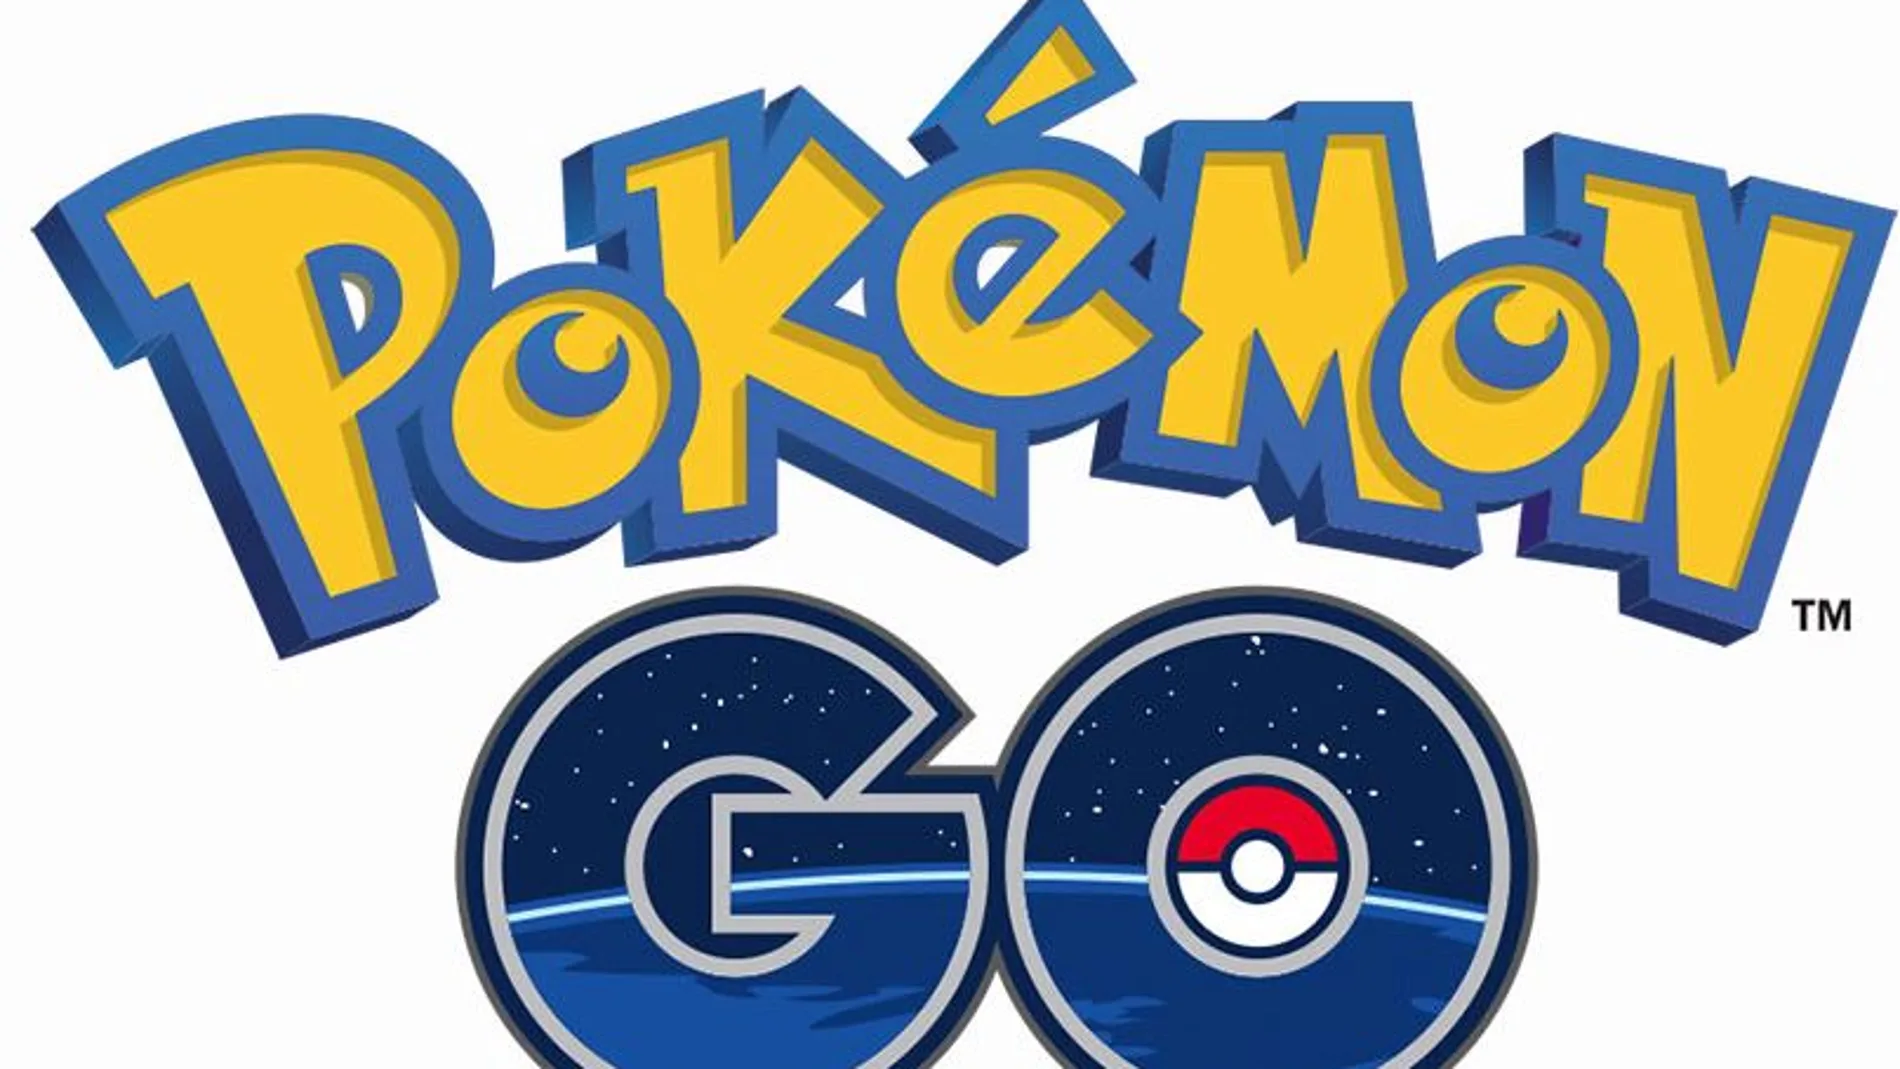 Pokémon GO se actualiza con nuevas mecánicas, objetos y más de 80 Pokémon